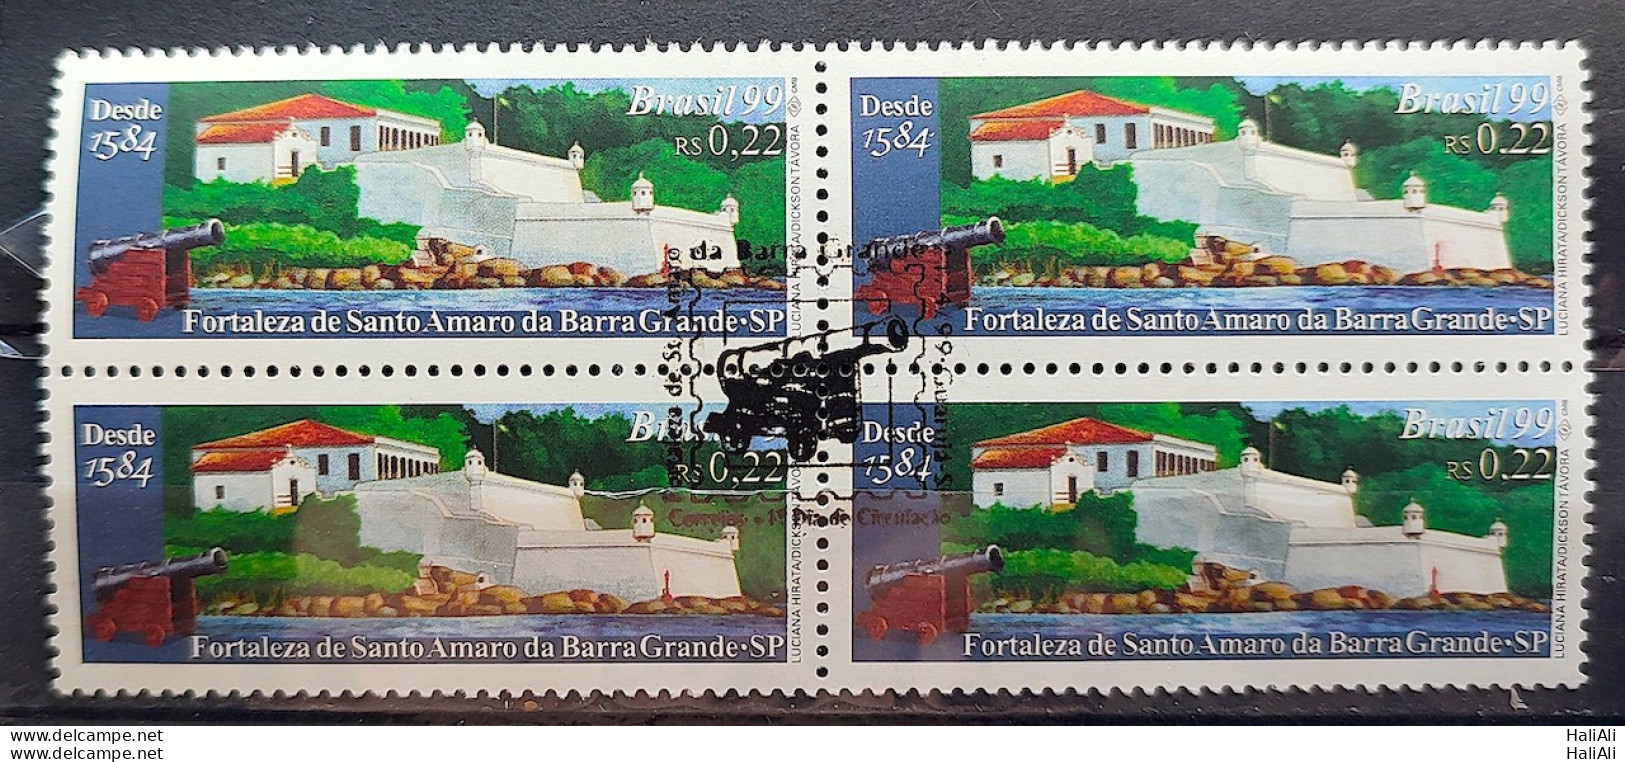 C 2194 Brazil Stamp Fortaleza De Santo Amaro Da Barra Grande Military 1999 Block Of 4 CBC SP - Unused Stamps